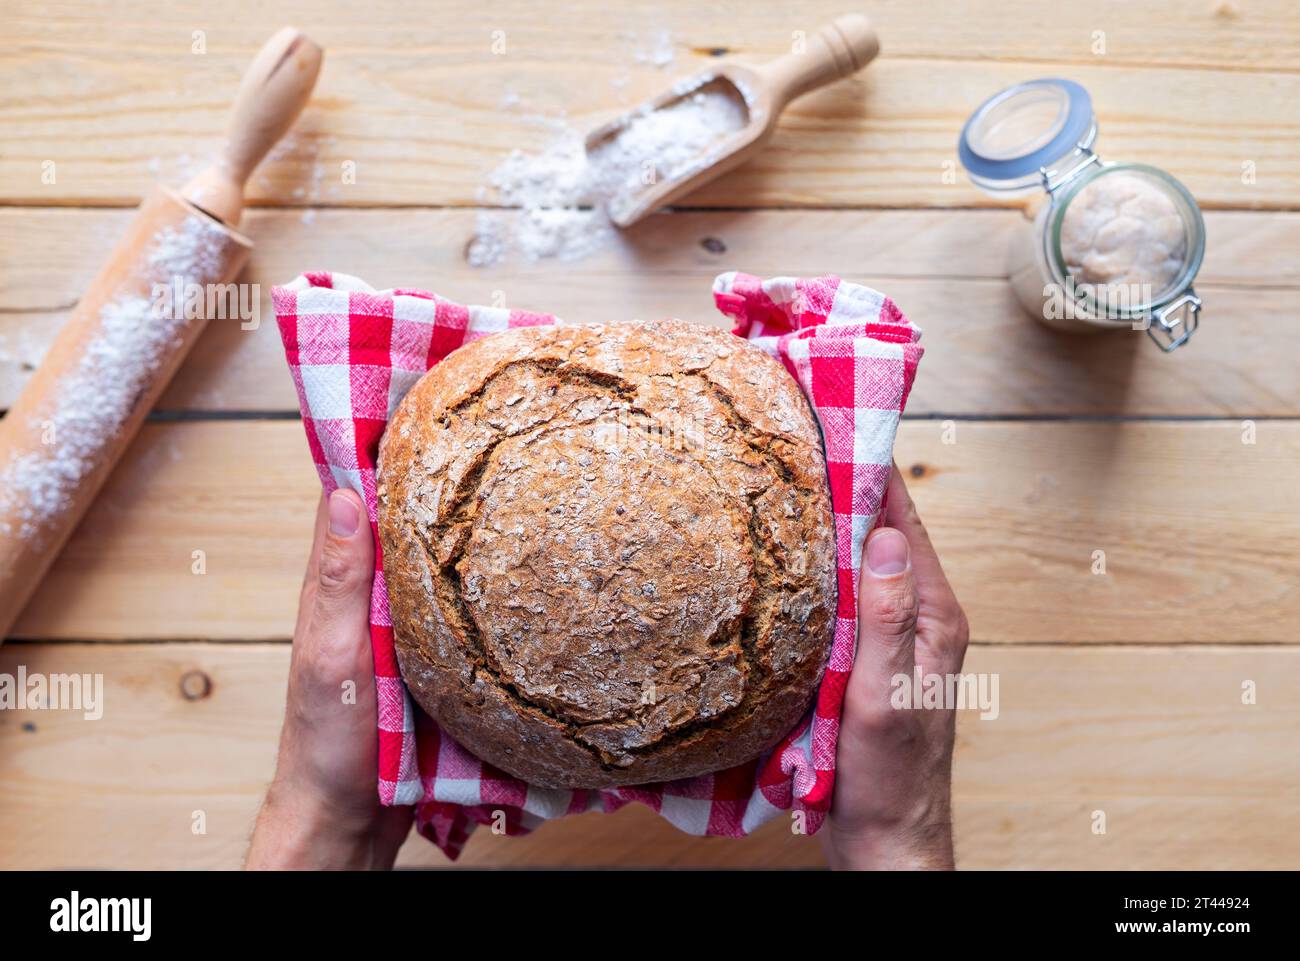 recette de pain au levain, rouleau à pâtisserie au levain et farine en arrière-plan Banque D'Images